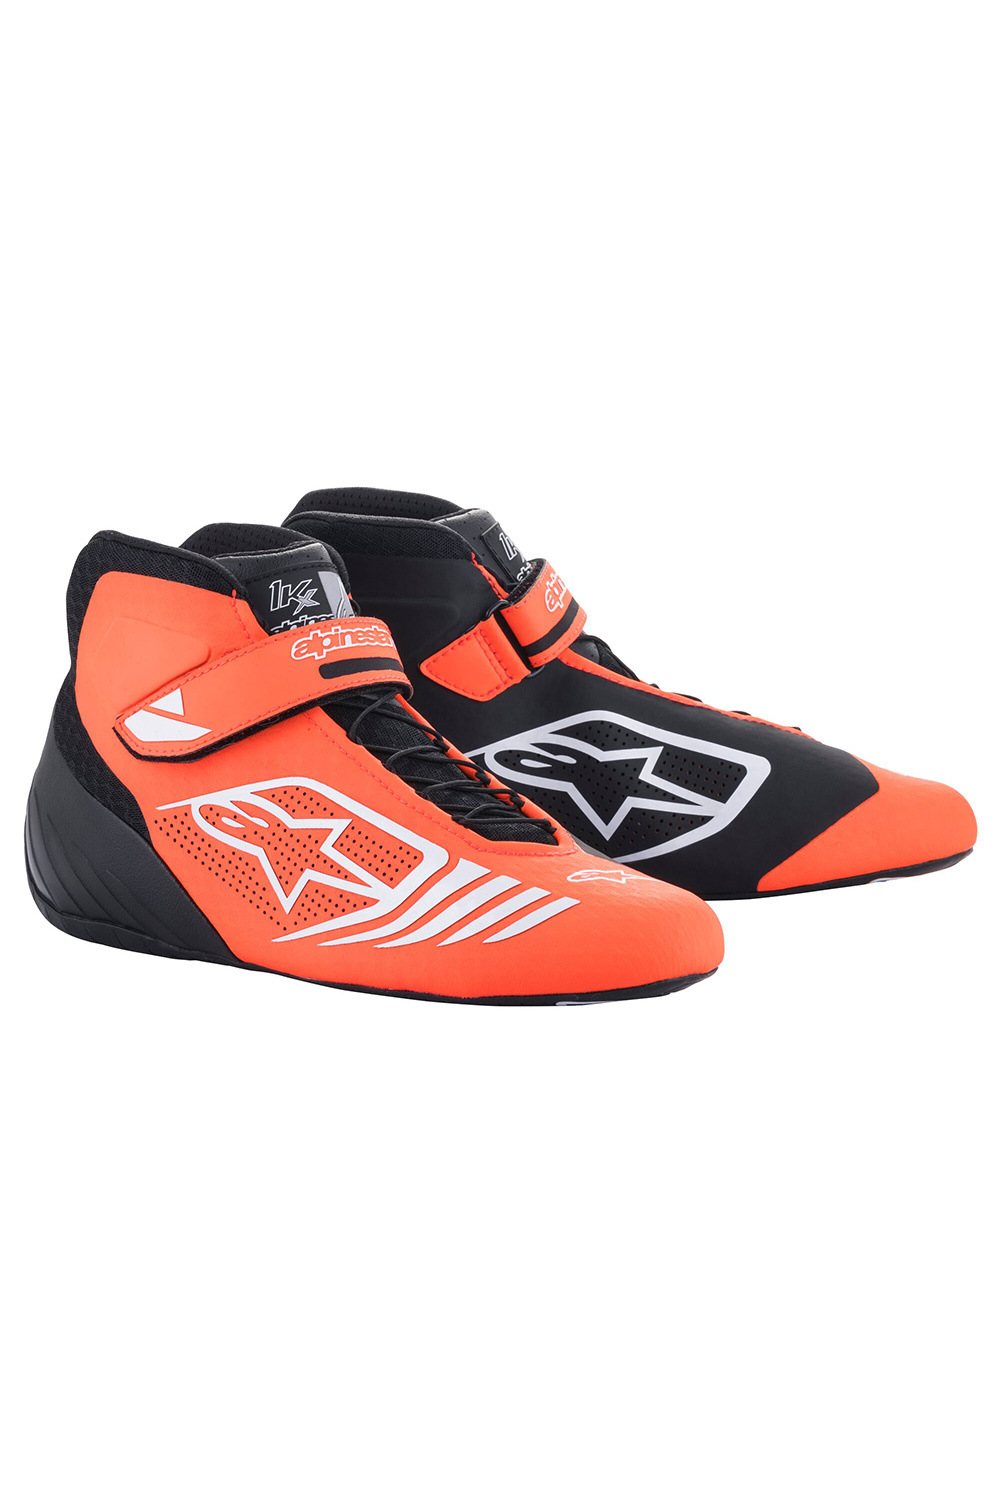 Alpinestars | Schuhe | Tech-1 KX | Schwarz-Fluo Orange-Weiß - Racing Fashion